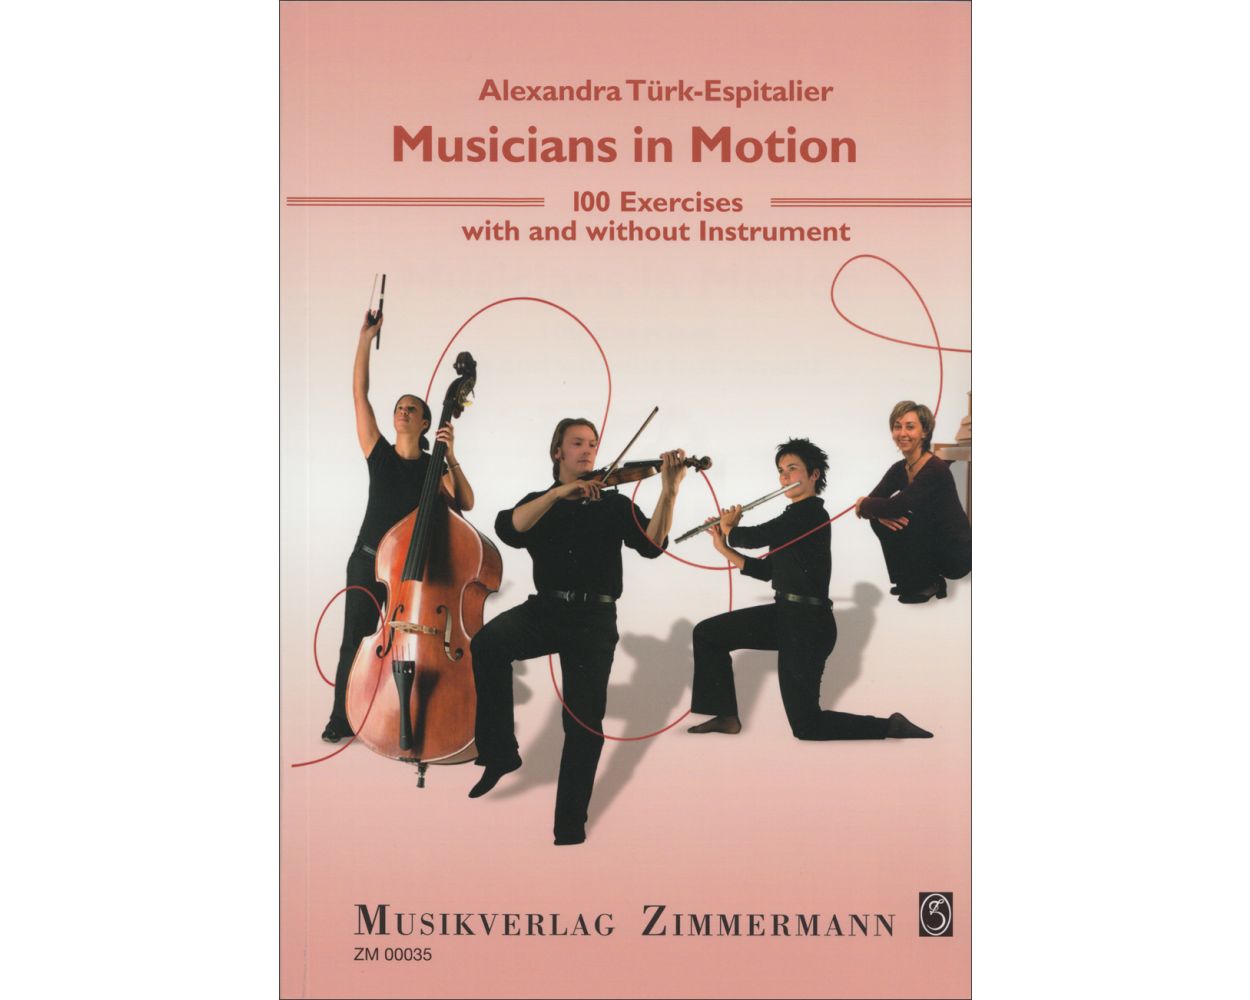 Turk-Espitalier - Musicians in Motion - Text Zimmermann ZM00035